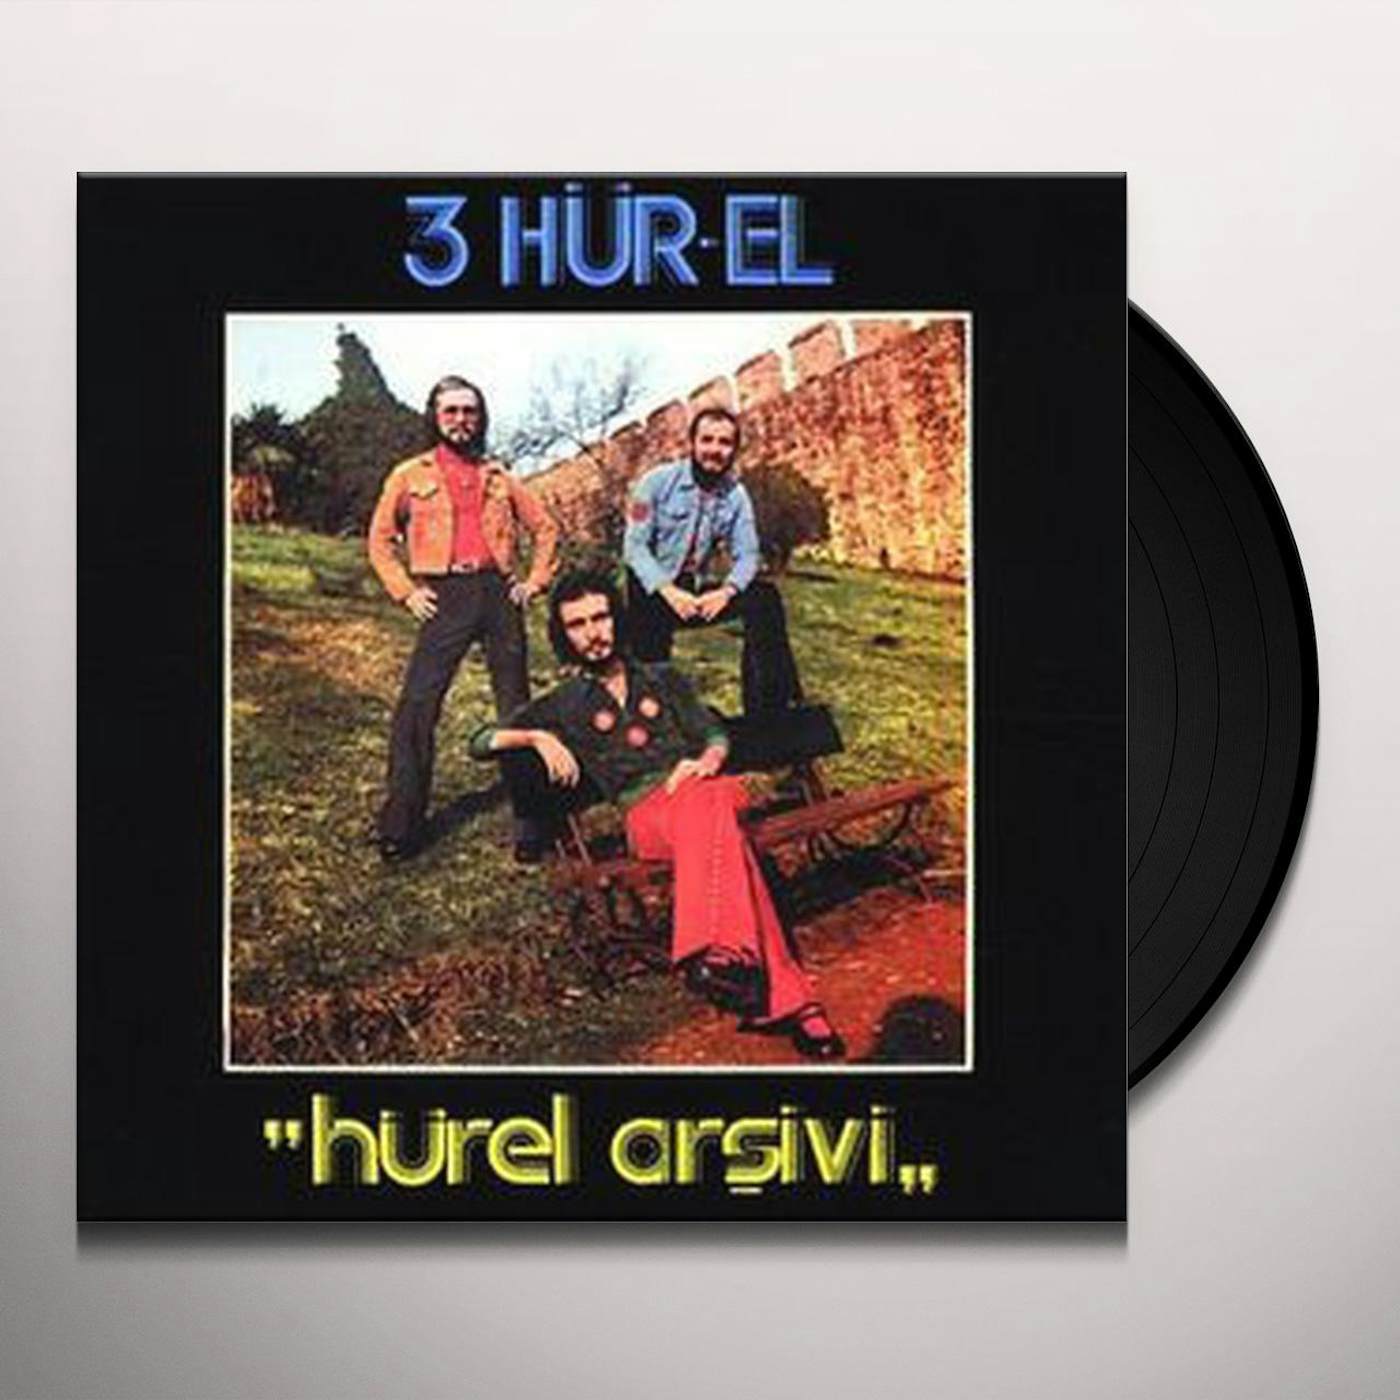 3 Hur-El HUREL ARSIVI Vinyl Record